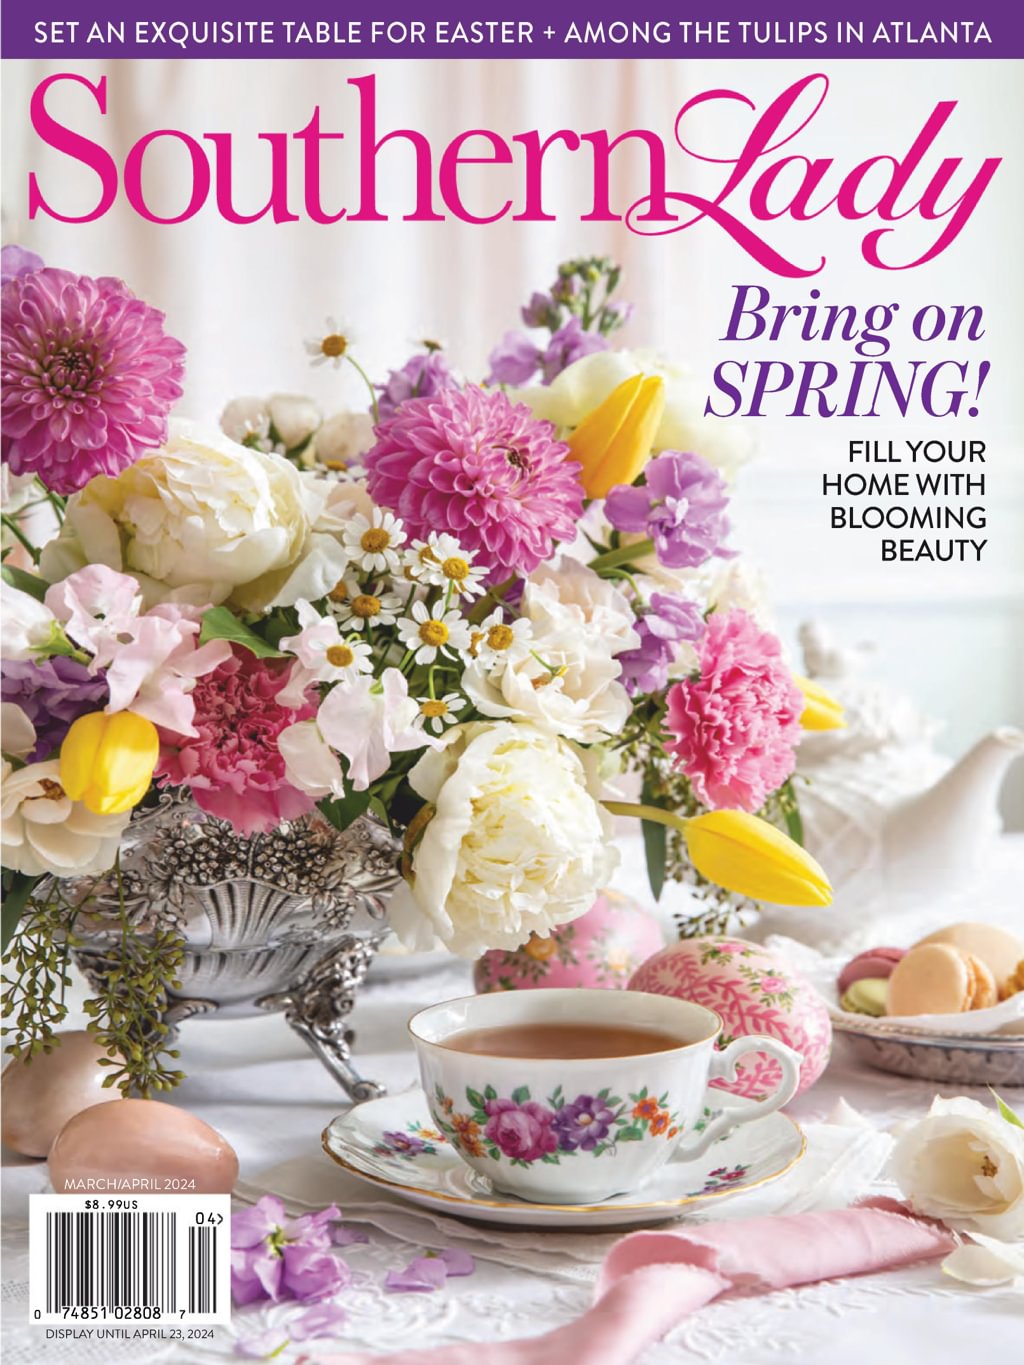 MeUndies April 2018 Subscription Review - Women's - Hello Subscription